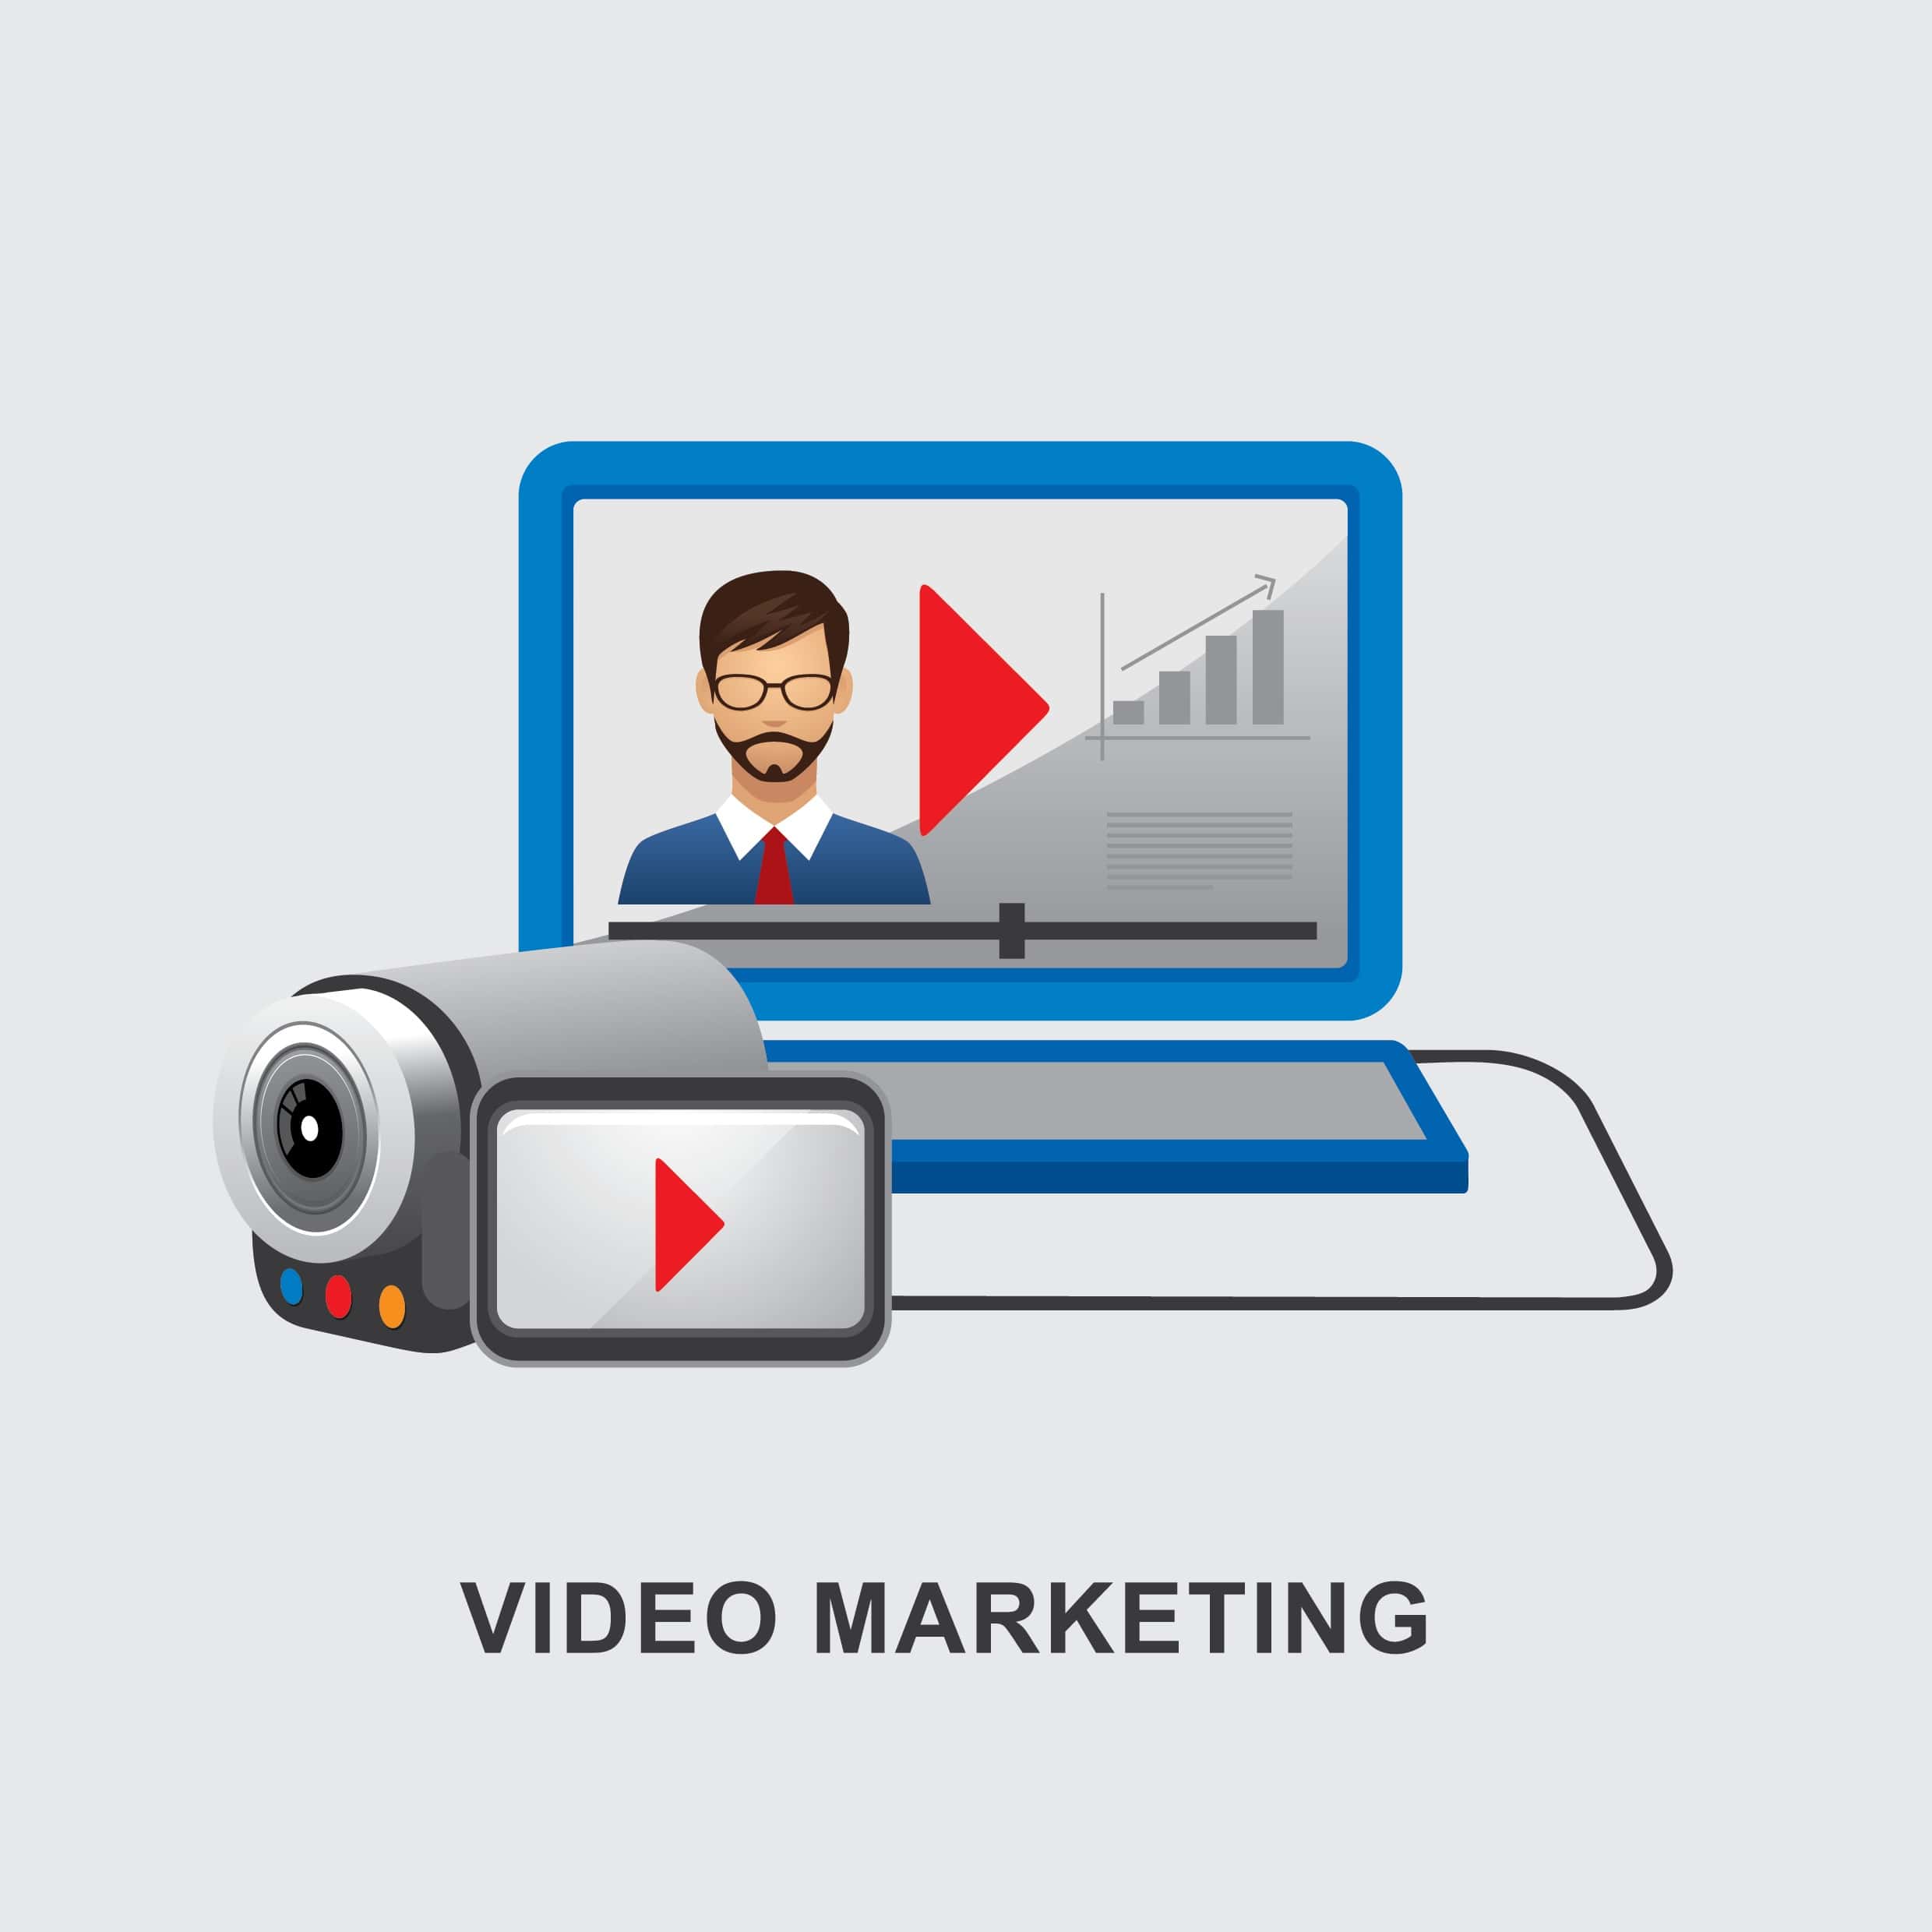 Видеомаркет. Видеомаркетинг фото для презентации. Video marketing. Короткие видеоролики для маркетинга. Продающее видео для бизнеса.